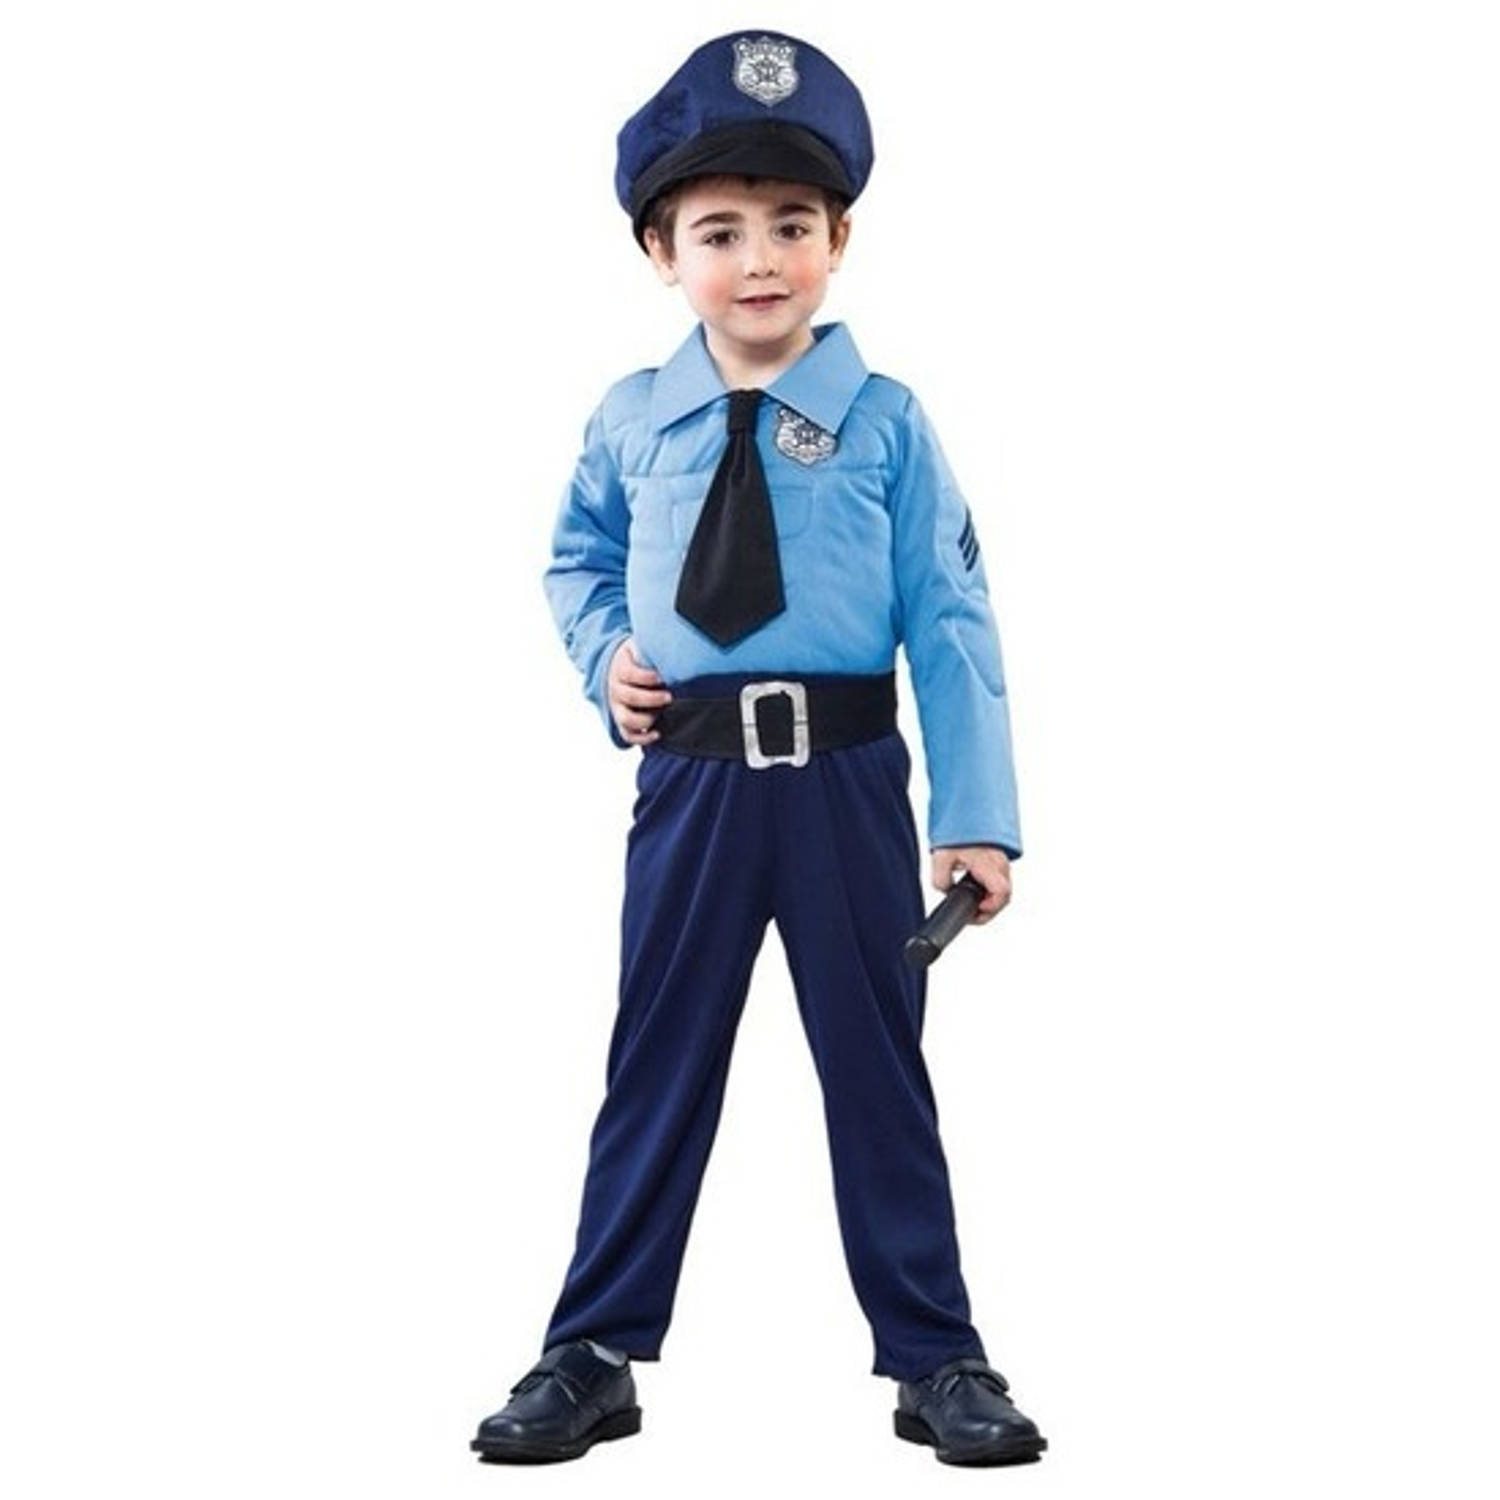 weggooien interferentie overschot Politieman kostuum voor jongens - politie verkleedpak | Blokker